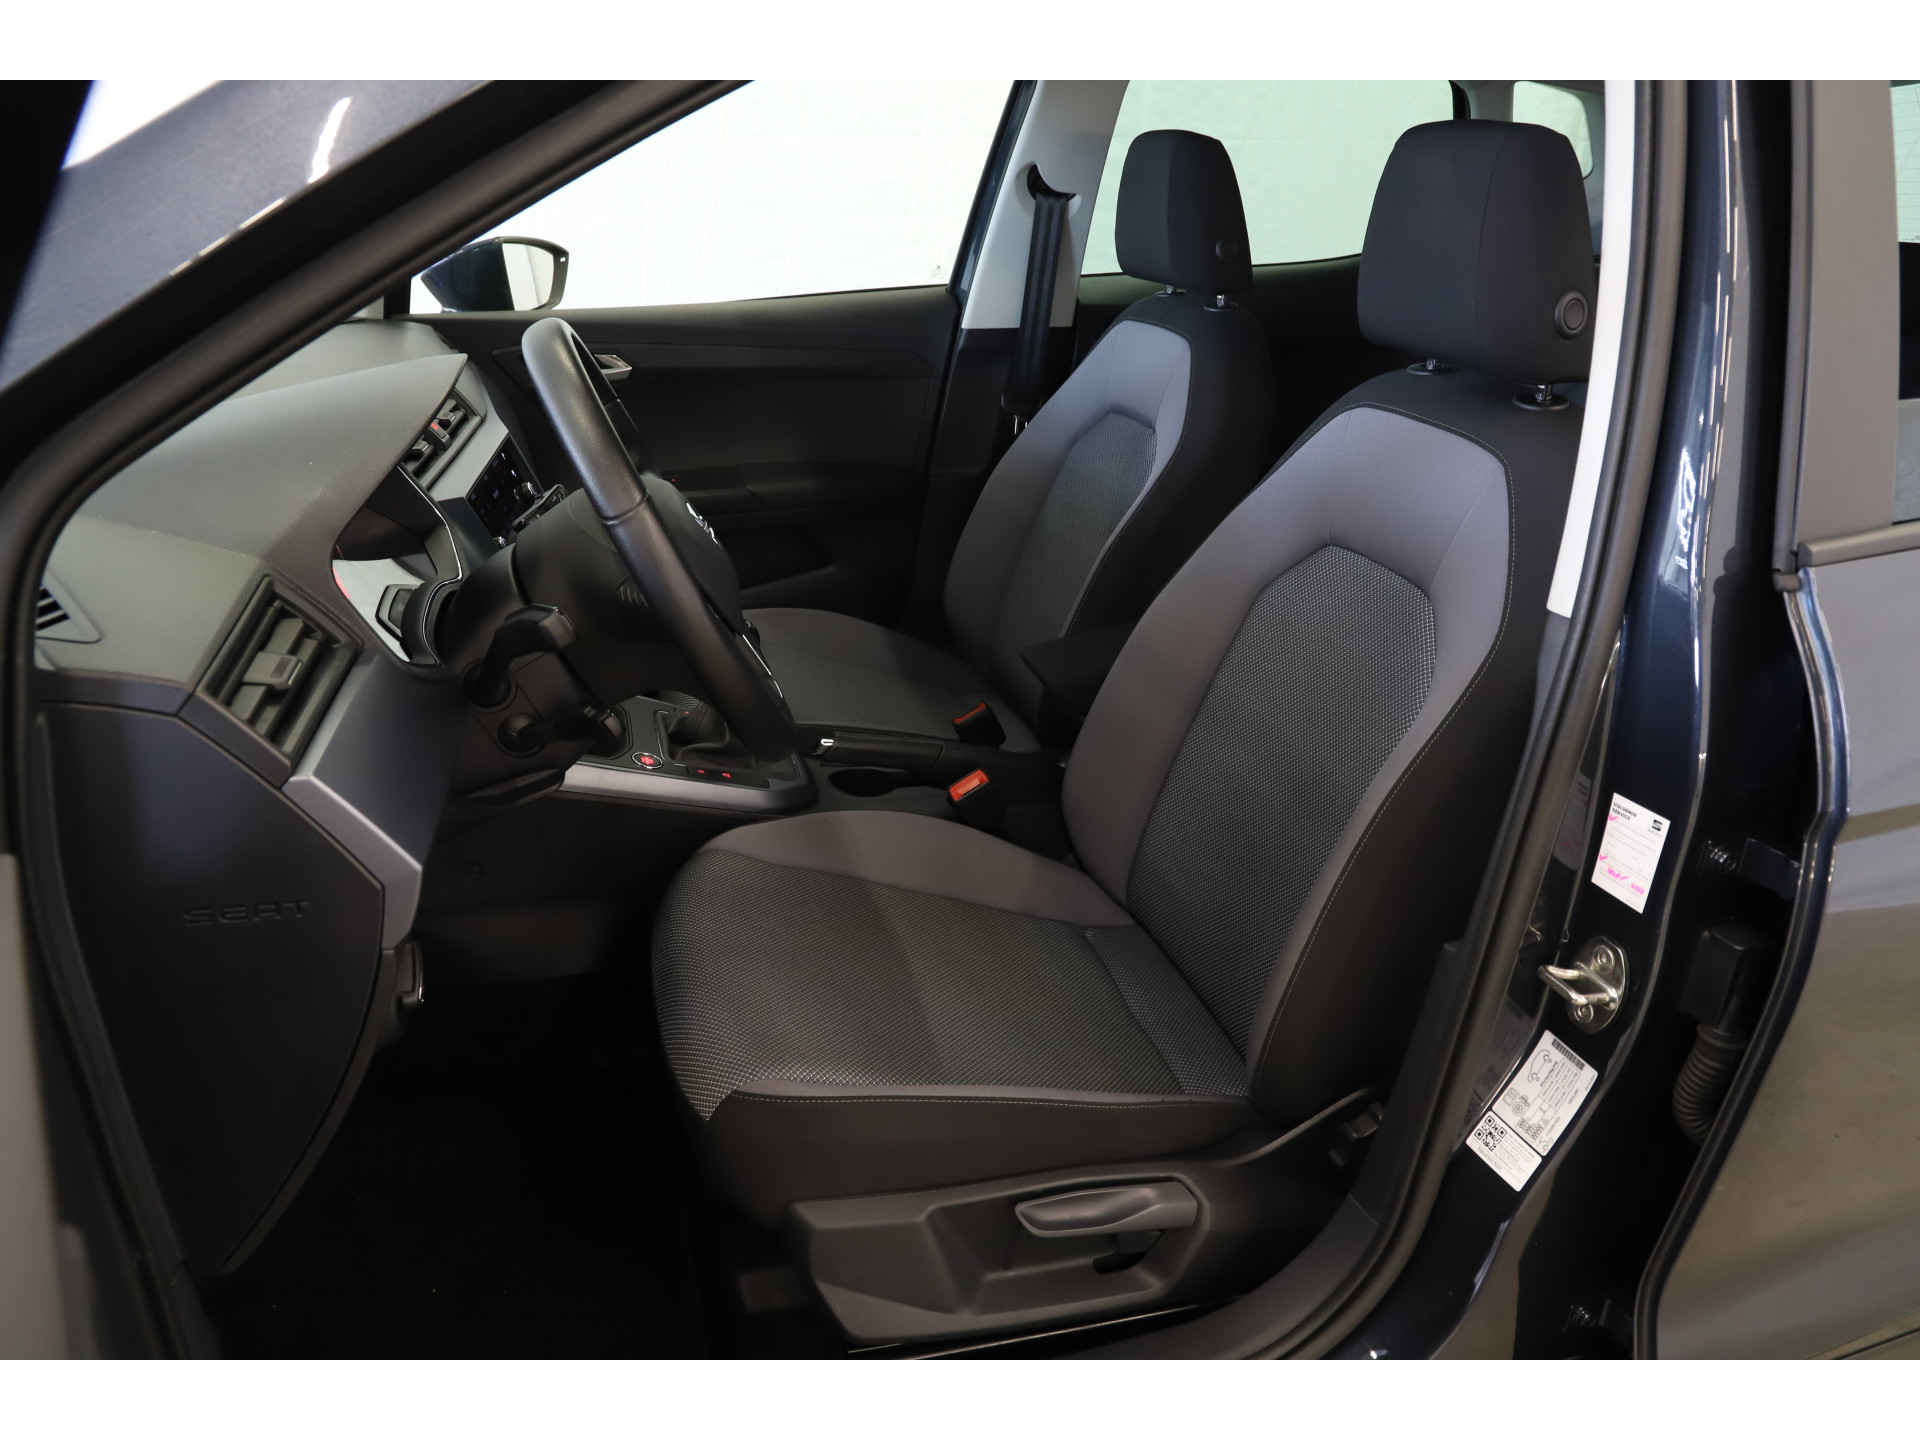 SEAT - Arona 1.0 TSI 95pk Style Business Intense - 2019